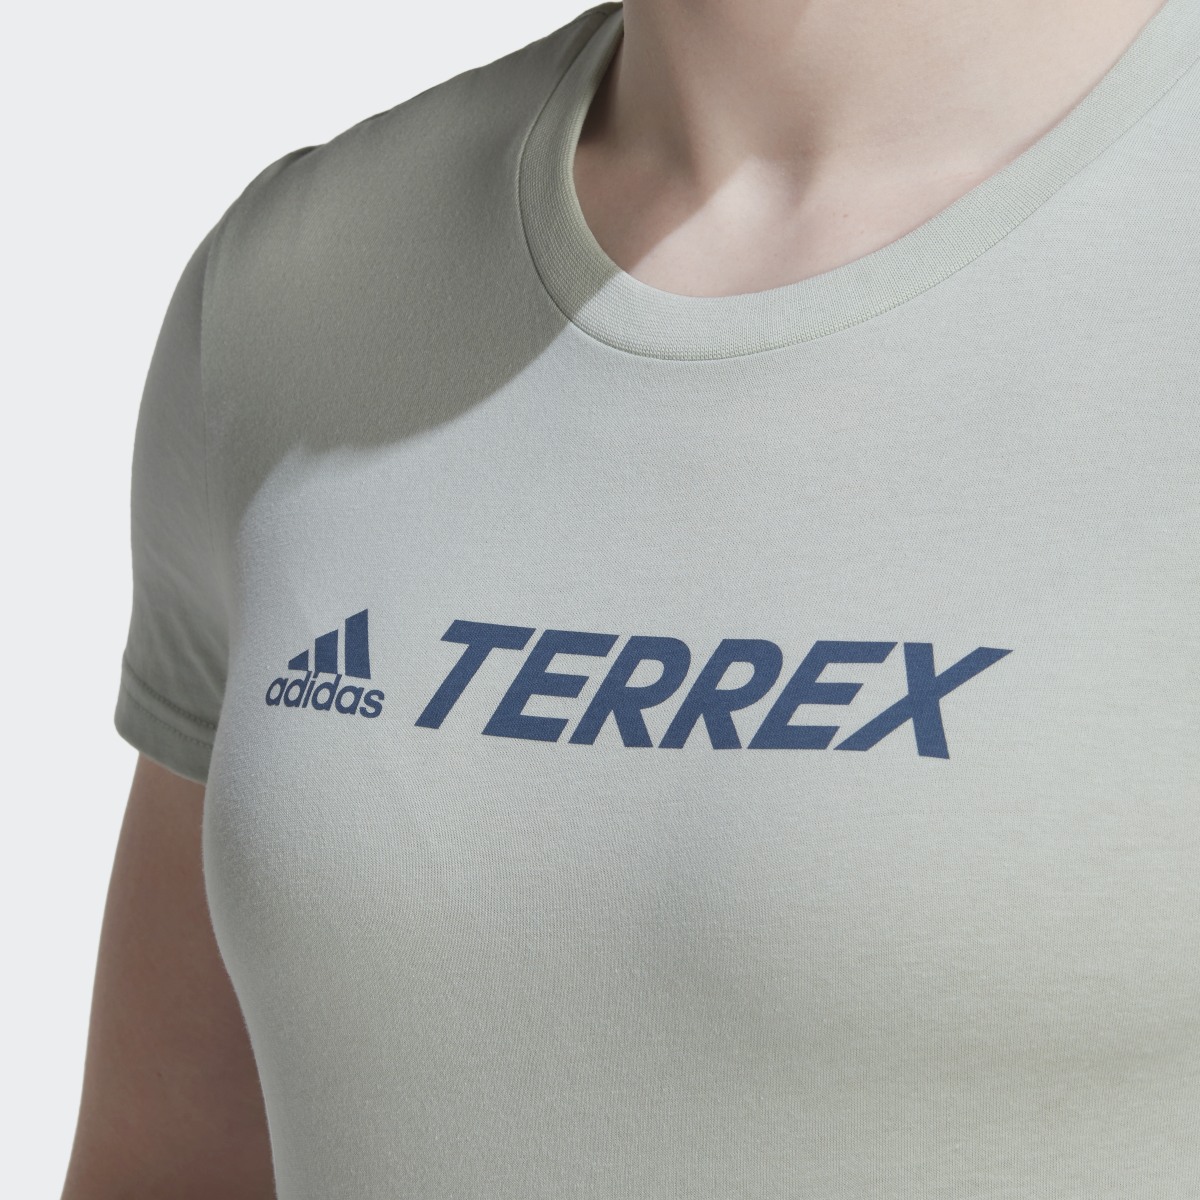 Adidas Camiseta Terrex Classic Logo. 7